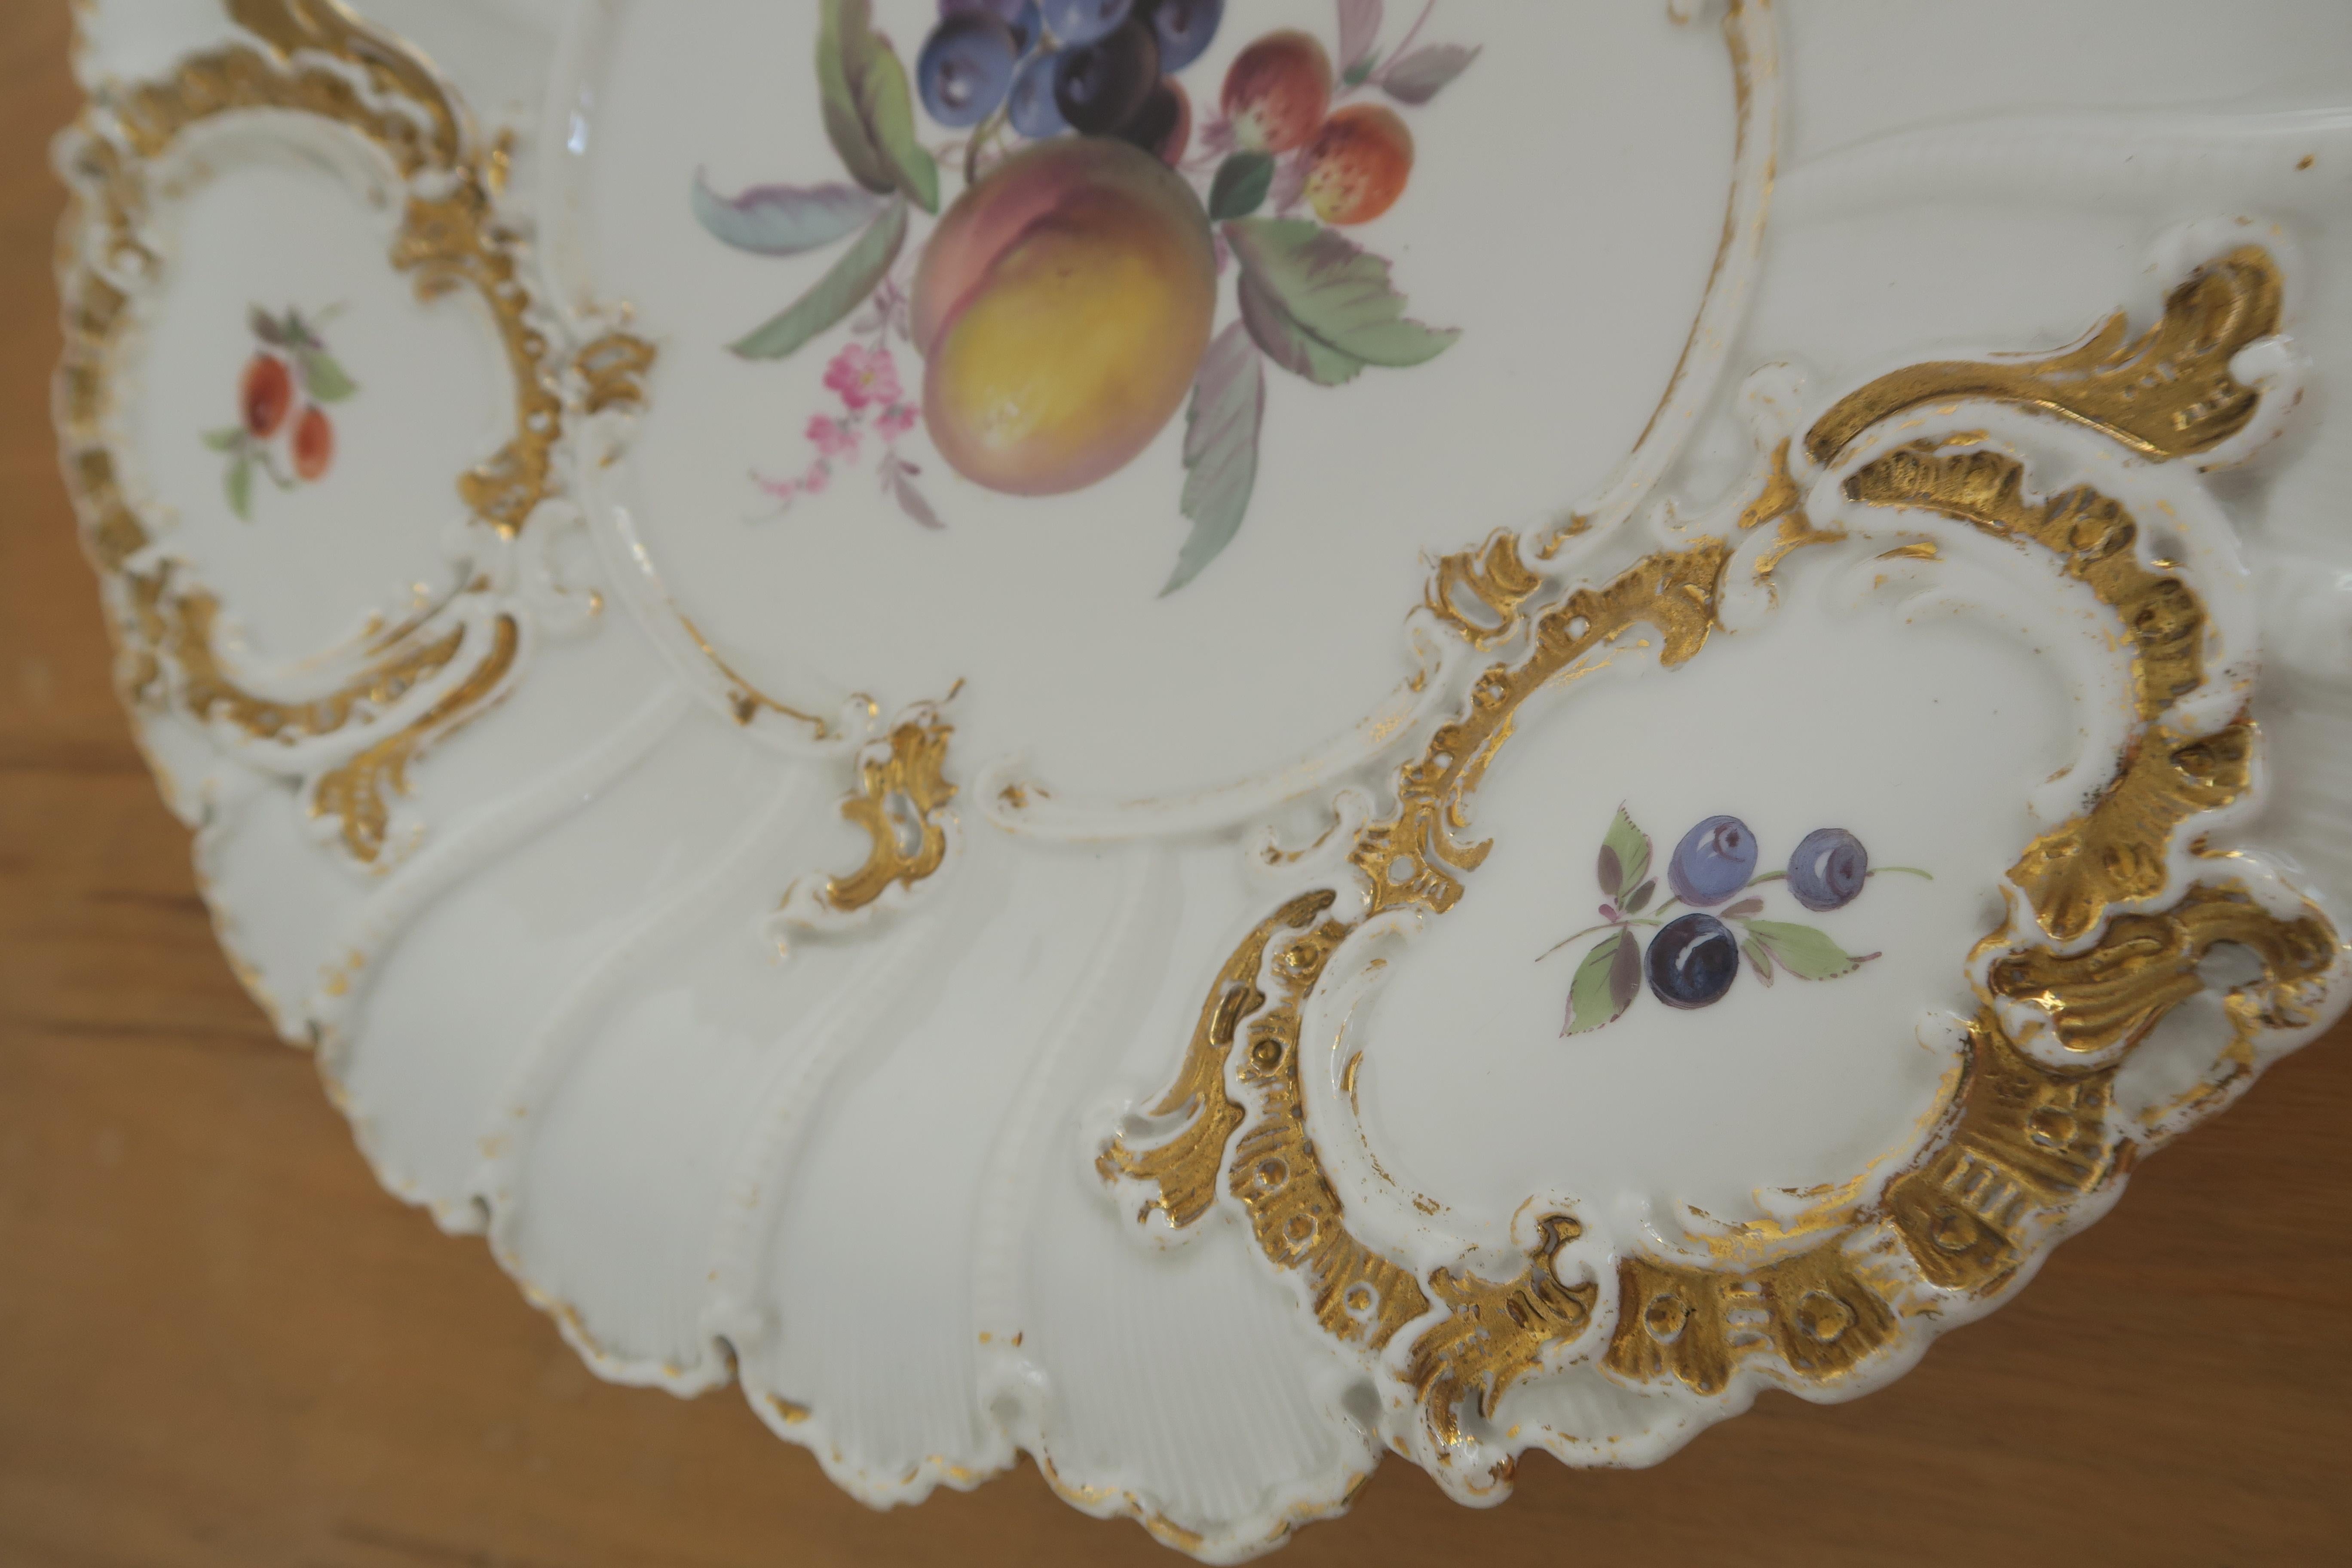 Baroque Revival Unique Hand Painted Fruit Bowl by Porcelain-Manufacture of Meissen